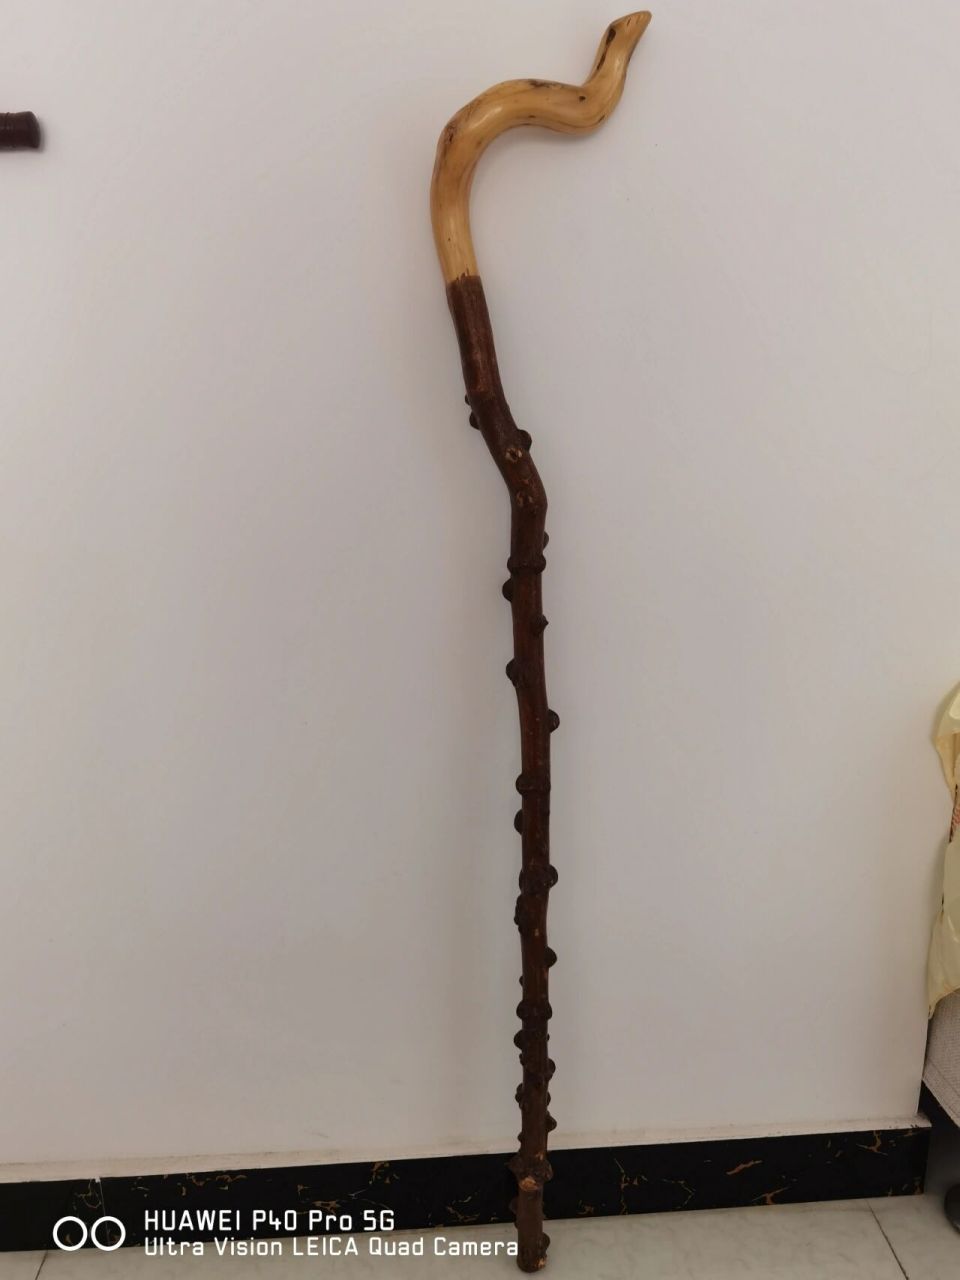 这个拐杖总长100cm,把手下保留了树皮,自然的节疤很漂亮